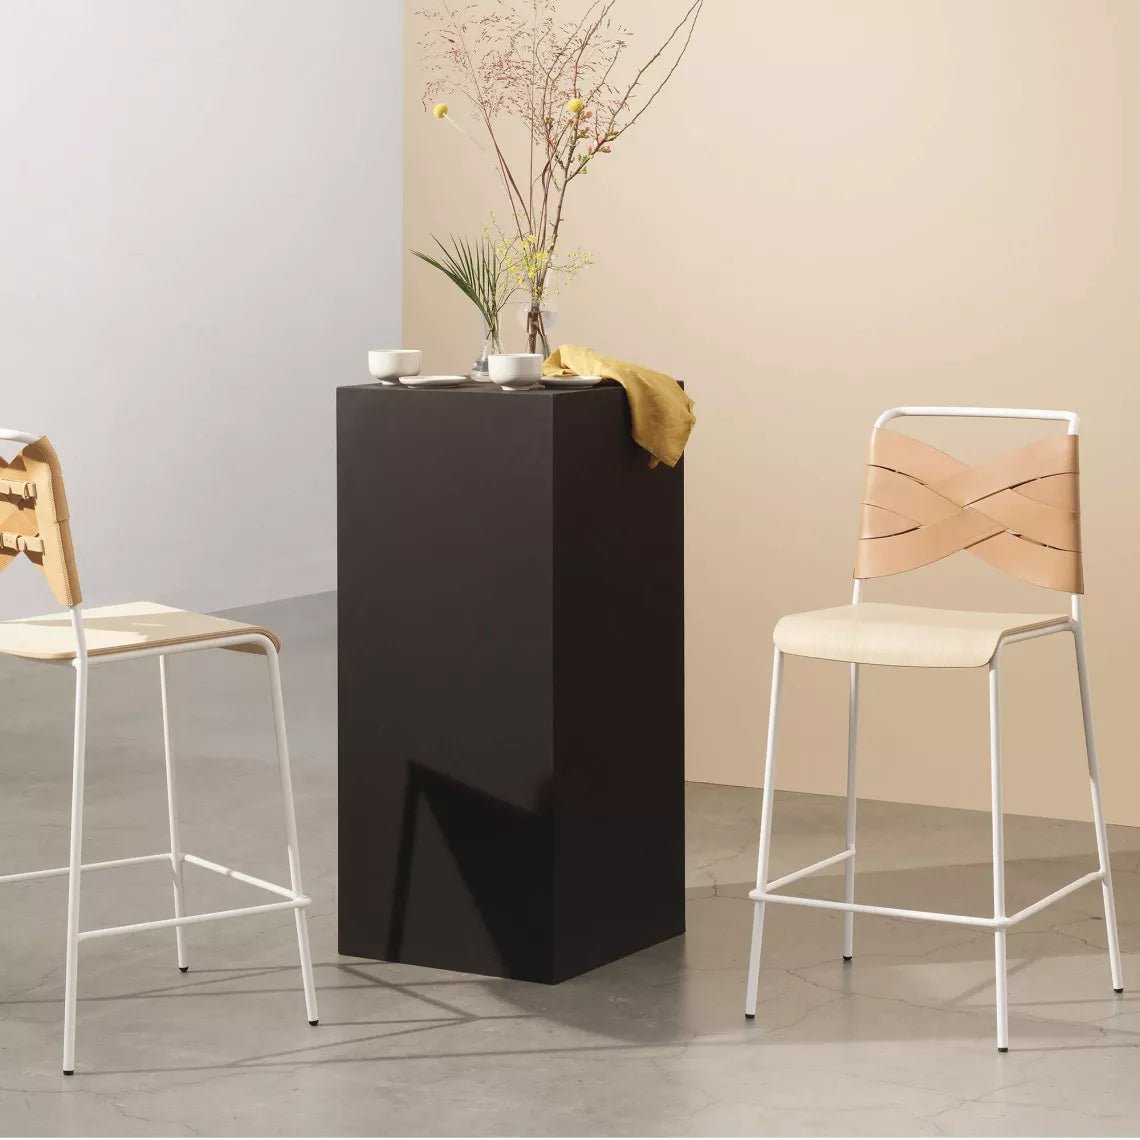 Torso Barhocker Chairs von Design House Stockholm